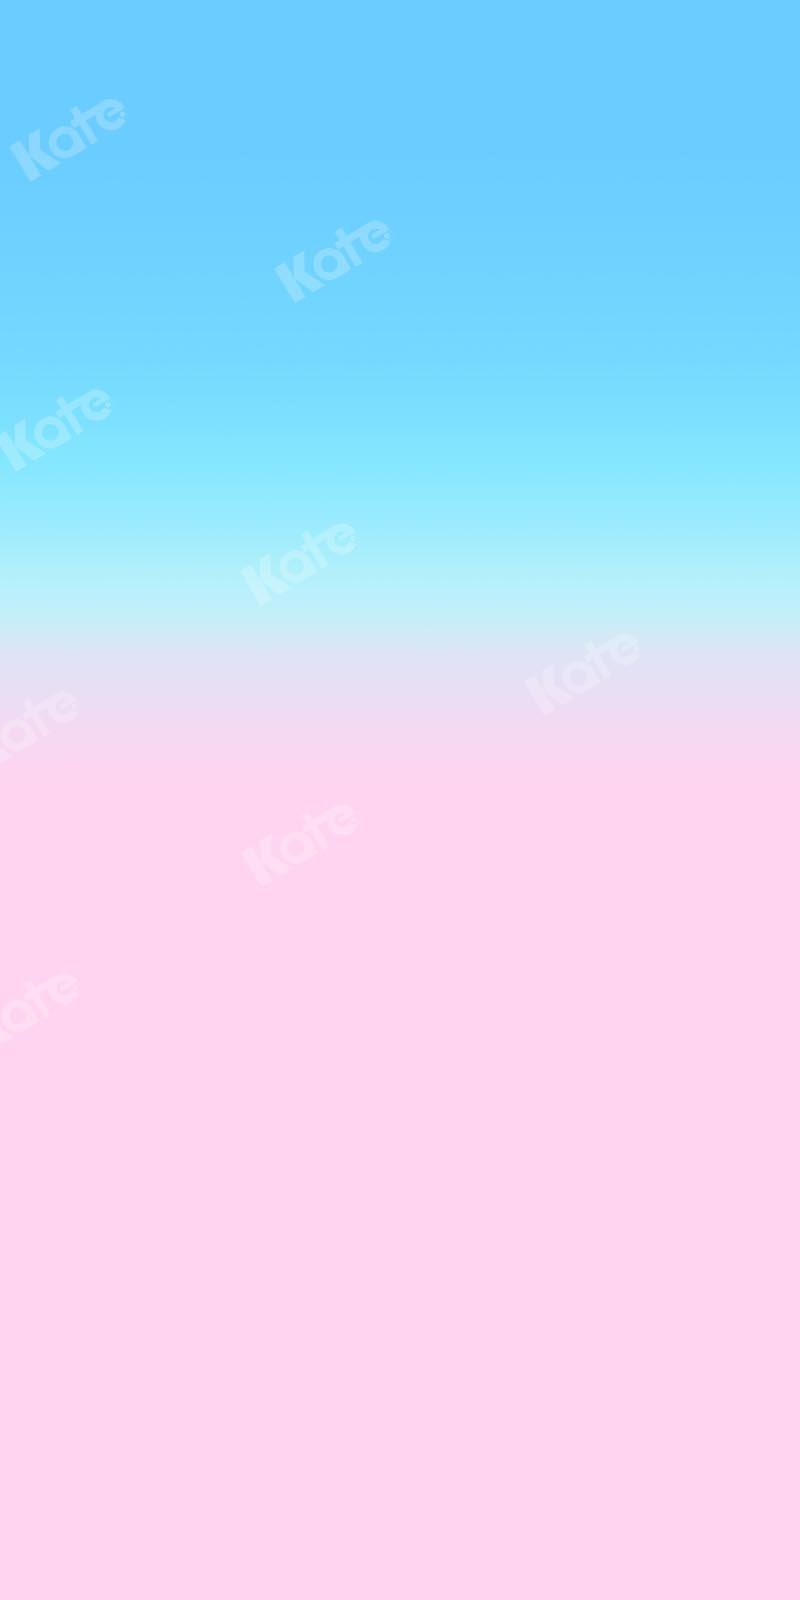 Kate Abstrakter babyblauer Farbverlauf-rosa Hintergrund Ombre